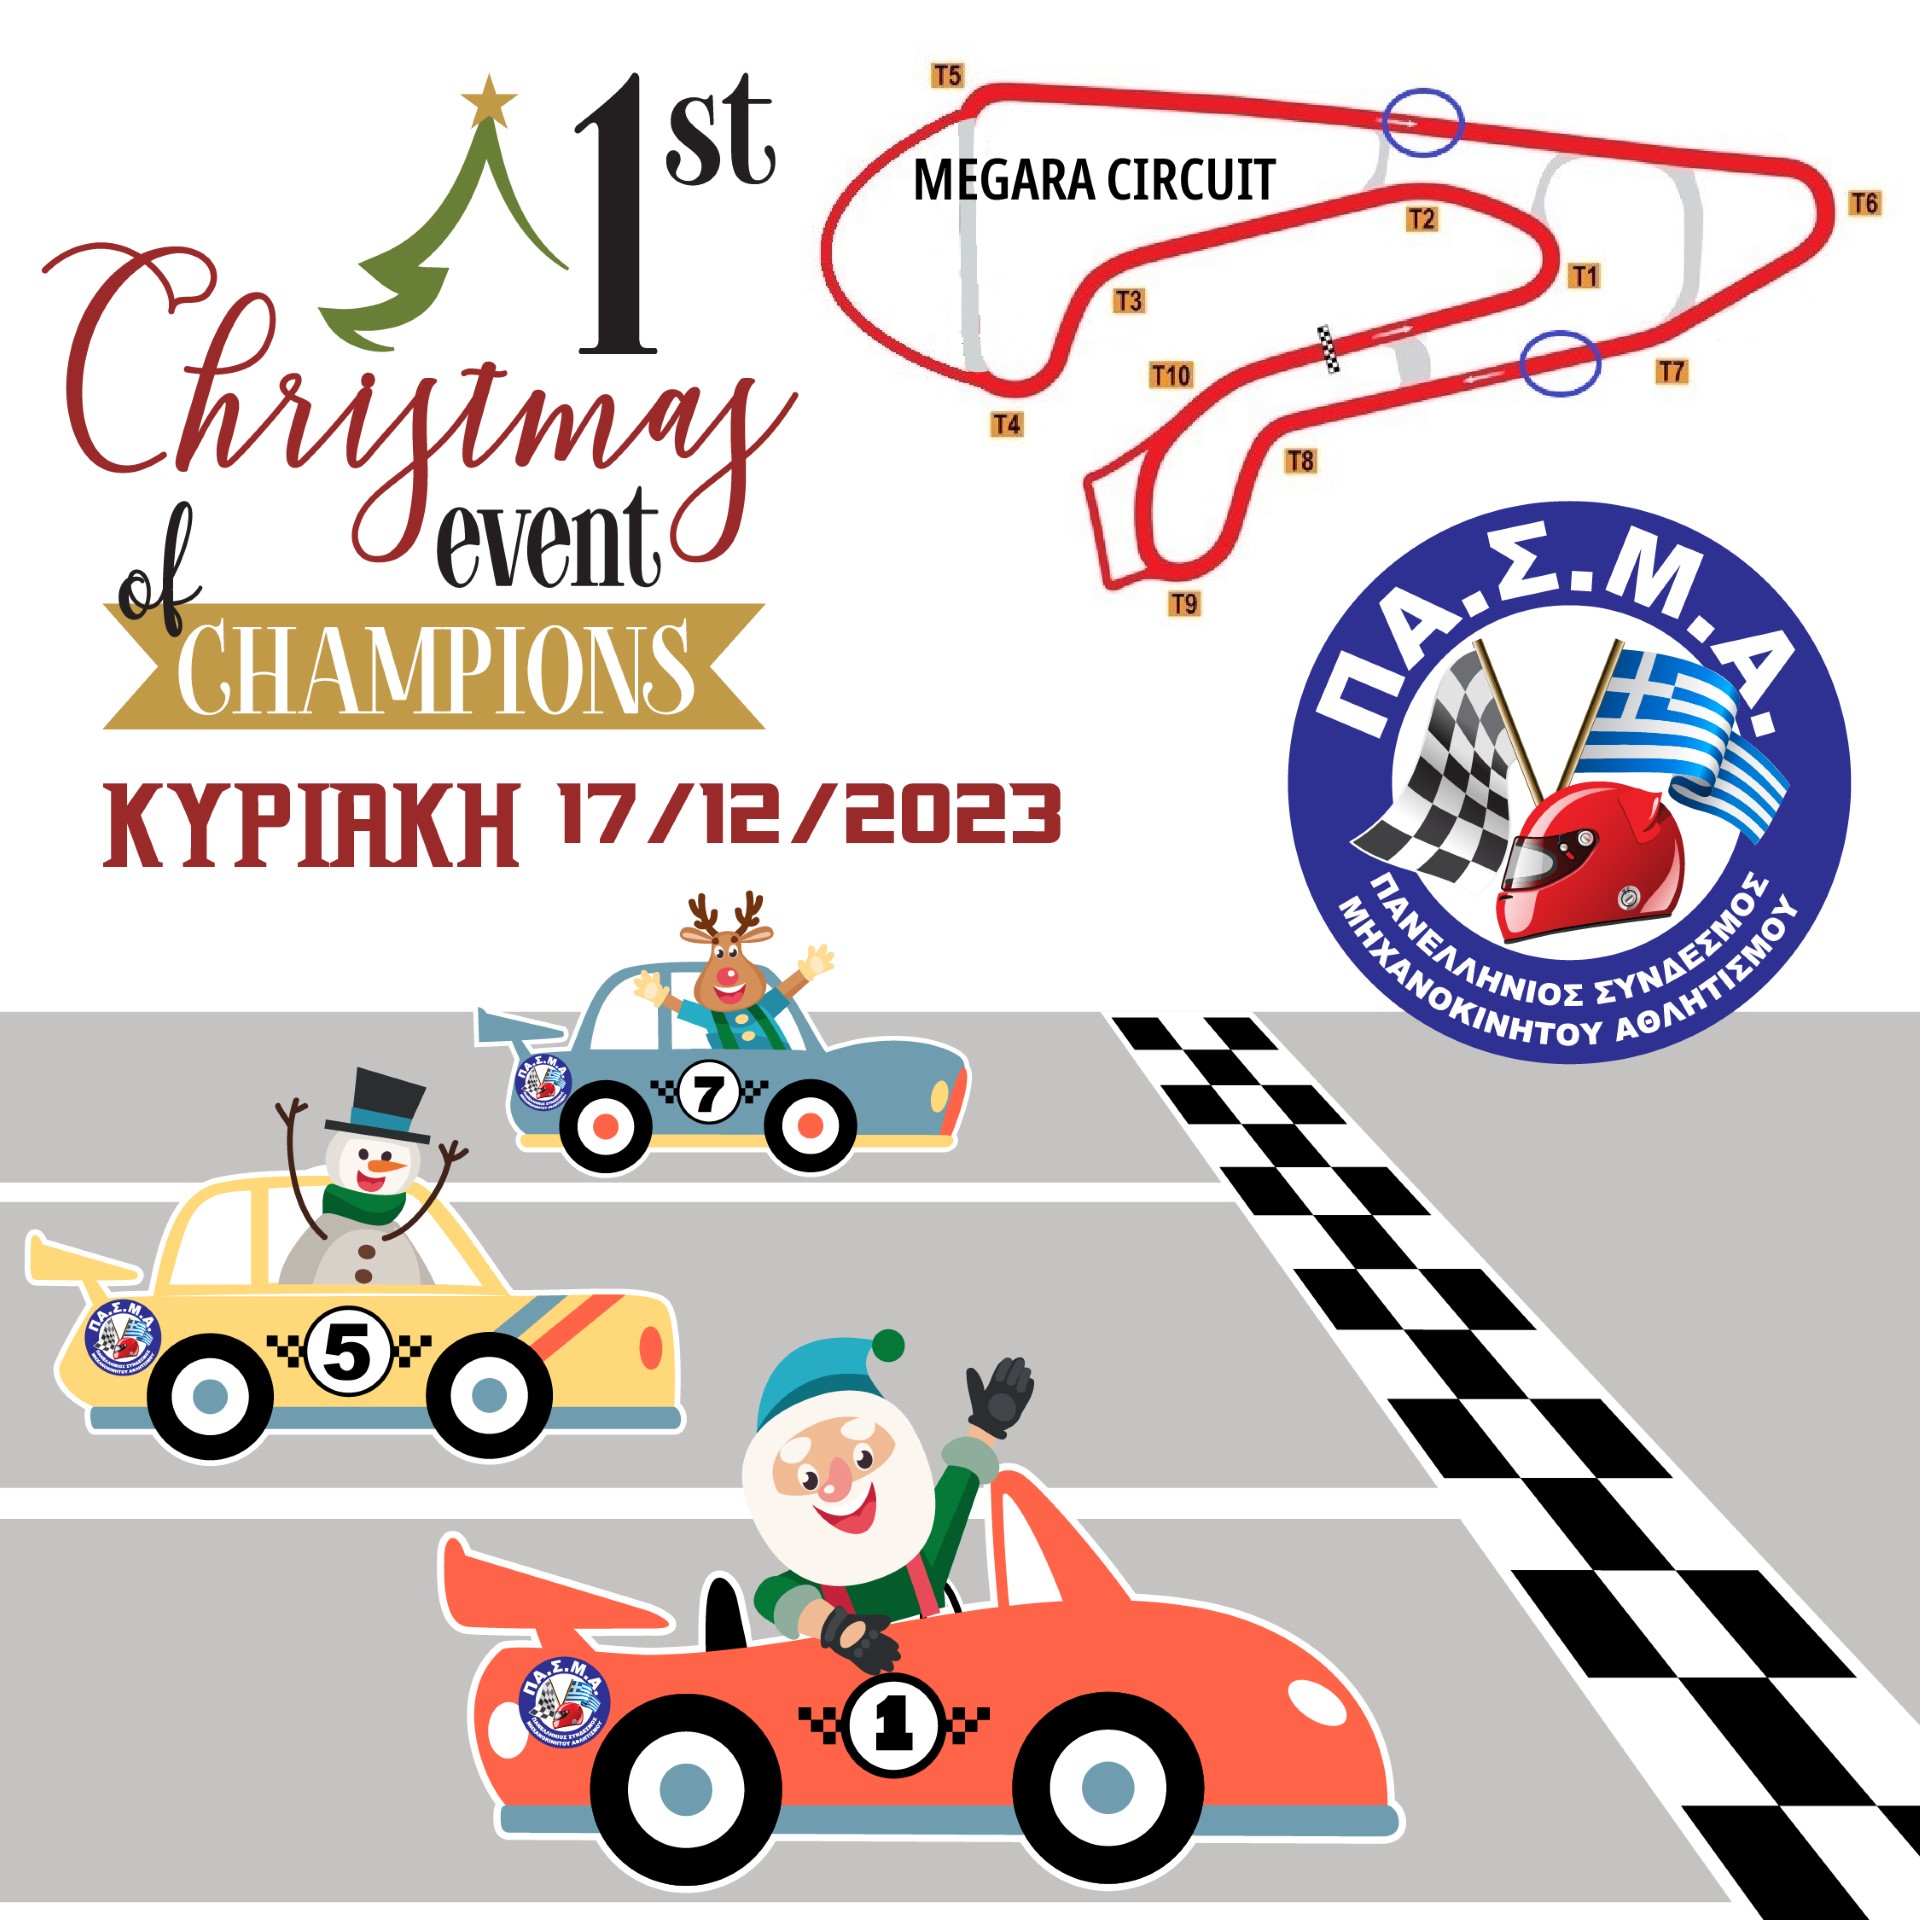 Athens Megara Circuit